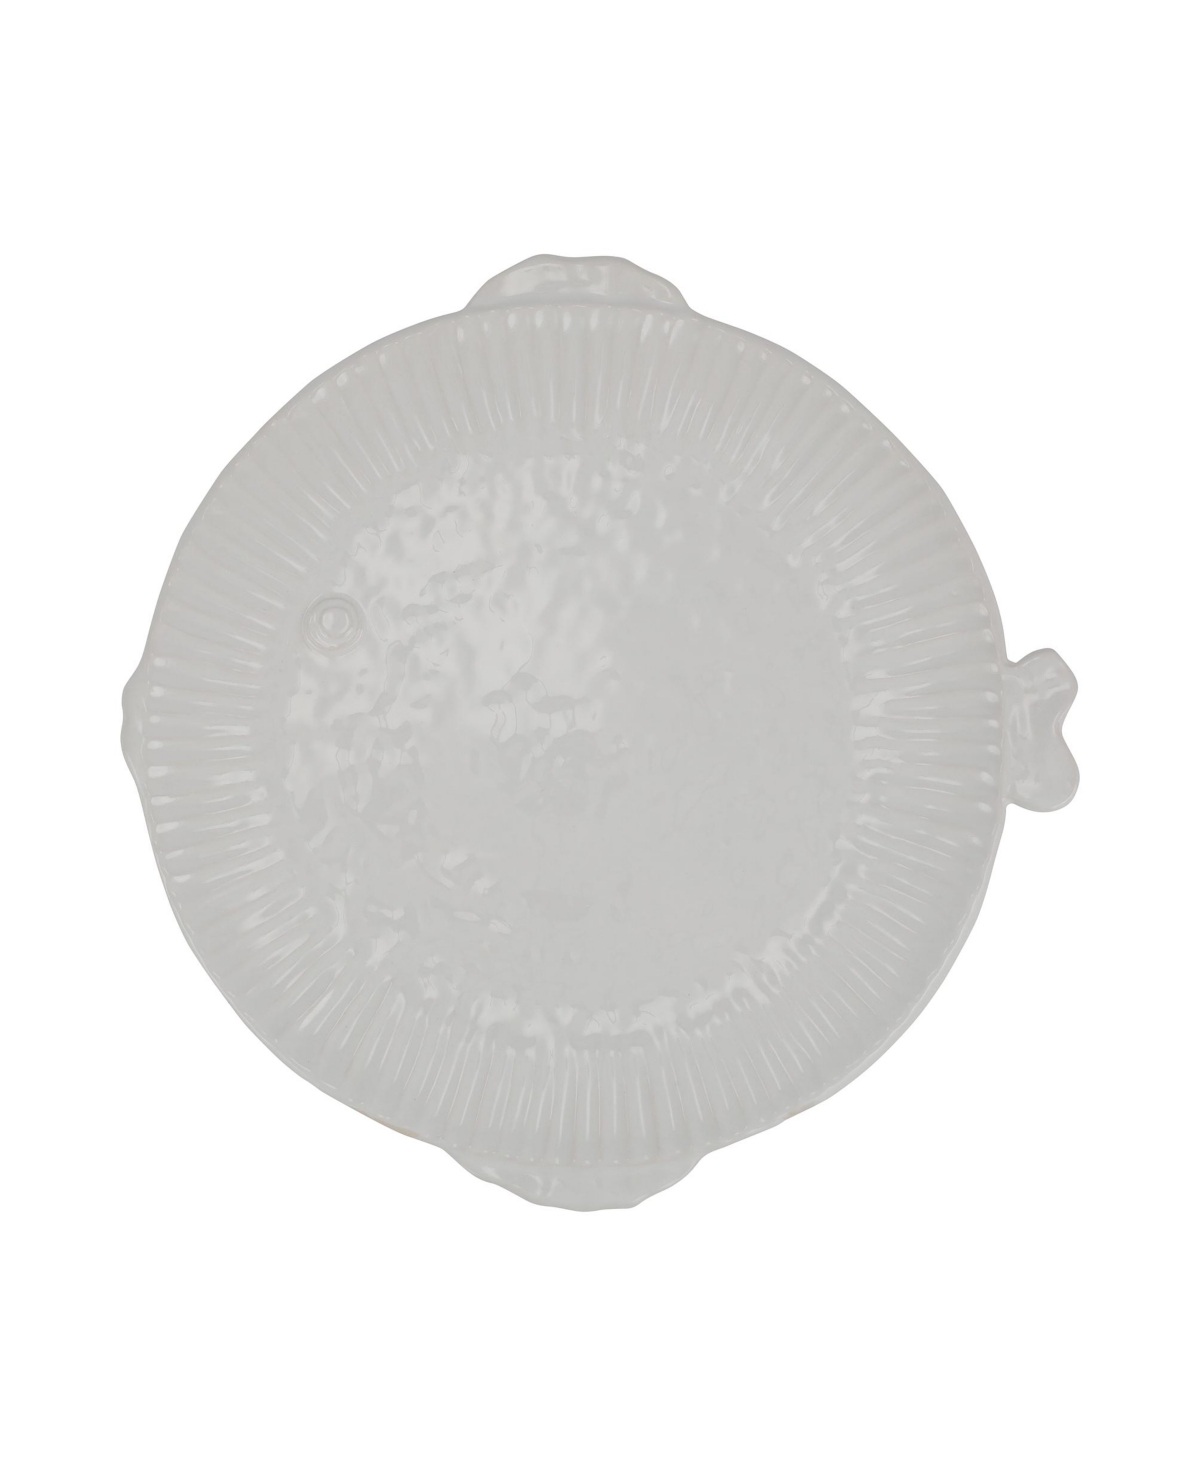 Shop Vietri Pesce Serena Round Platter16"d In White